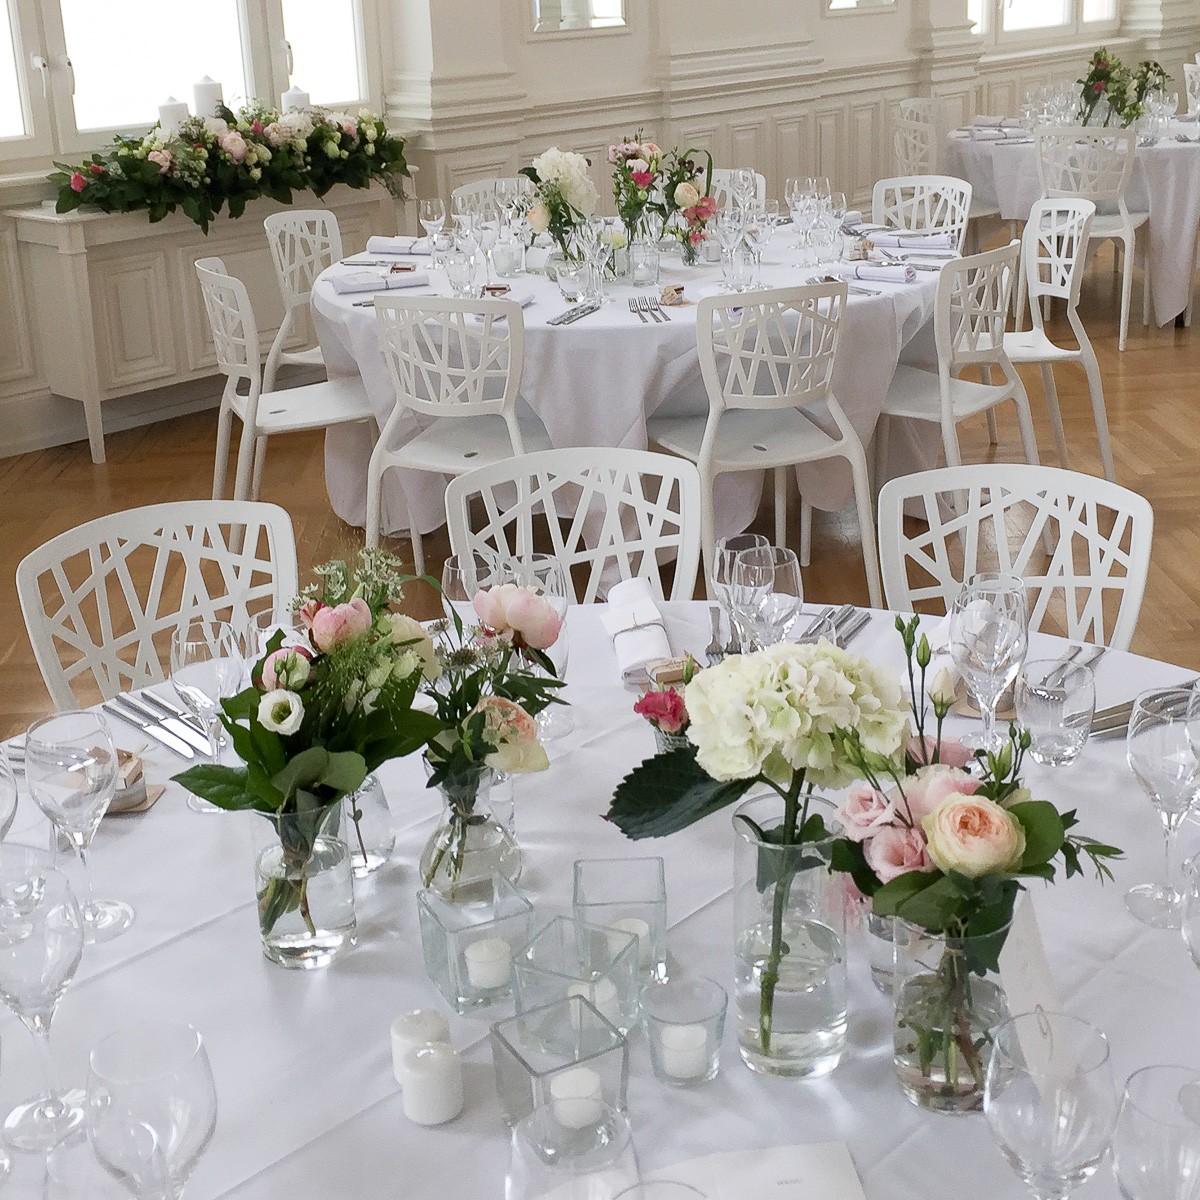 Mariage décoration de table fleurs couleurs pastels